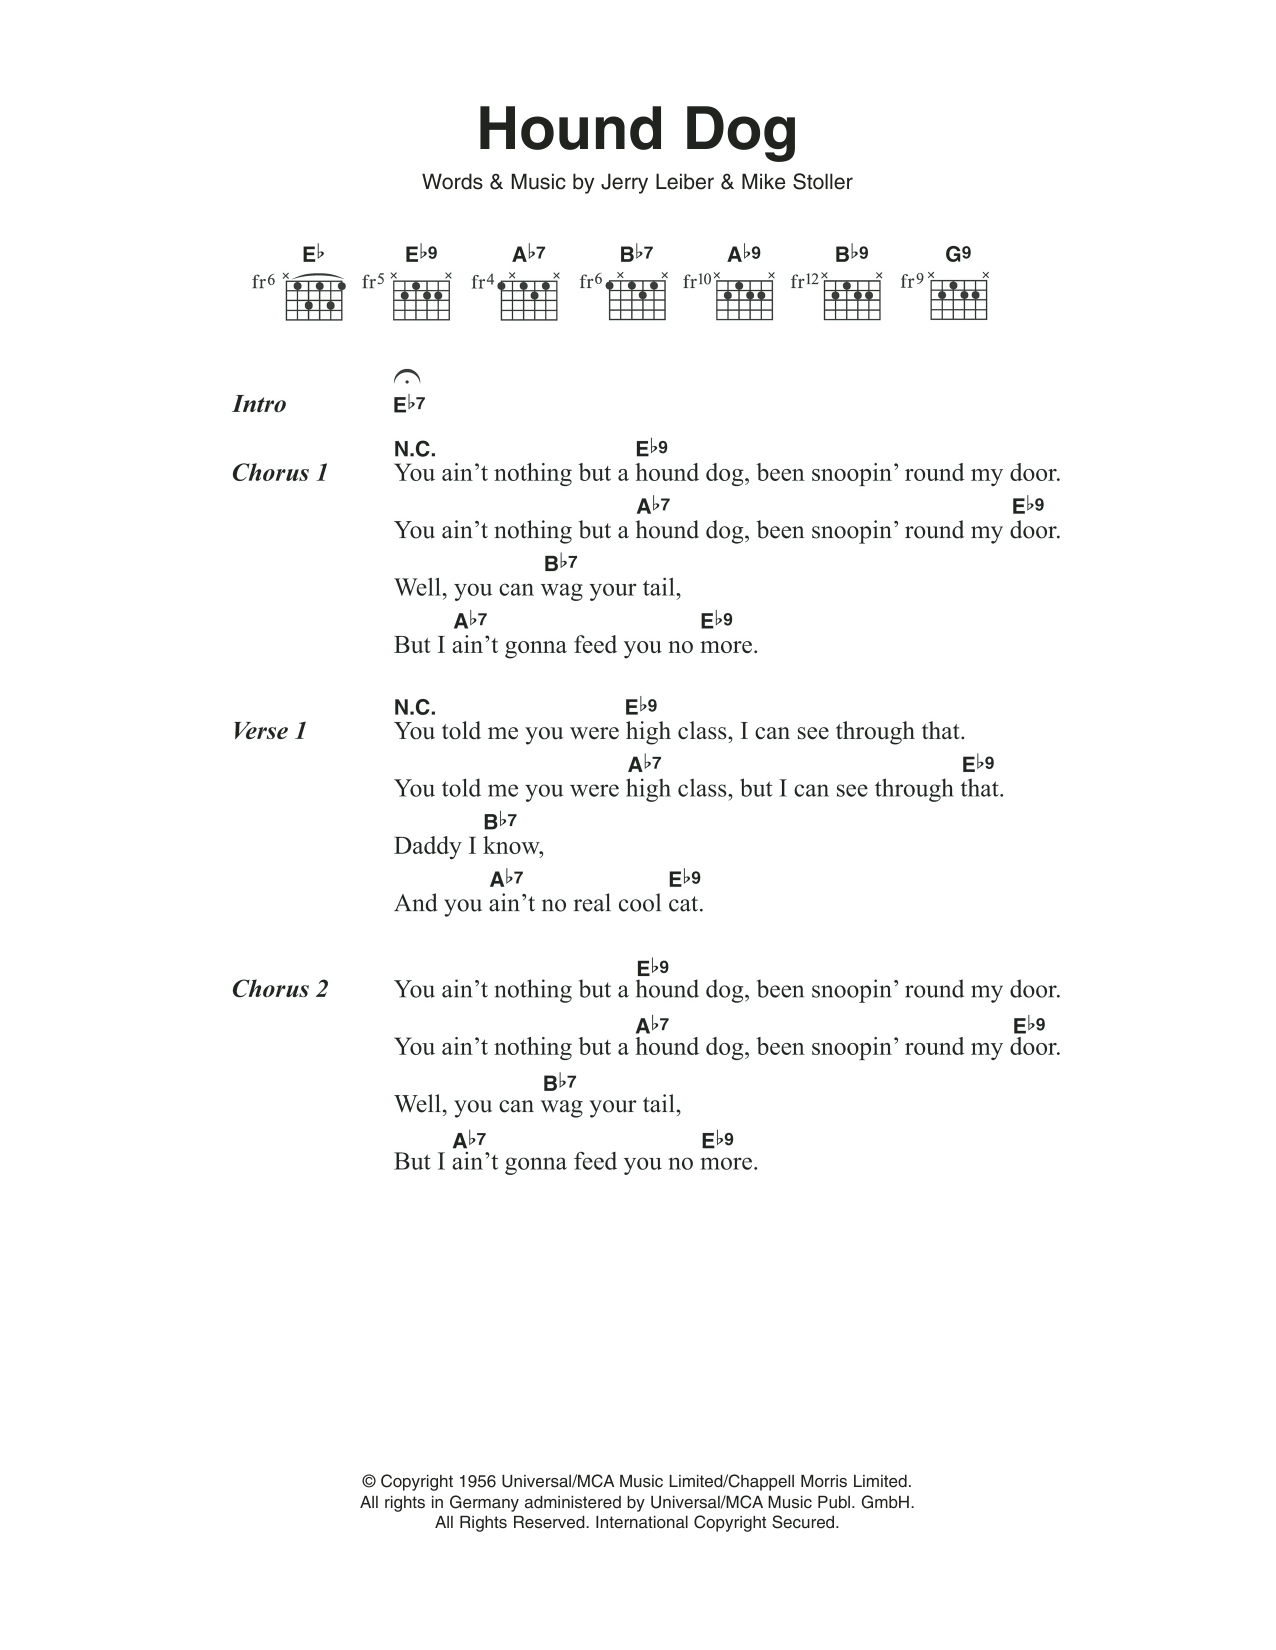 Elvis Presley Hound Dog Sheet Music Notes & Chords for Lyrics & Chords - Download or Print PDF